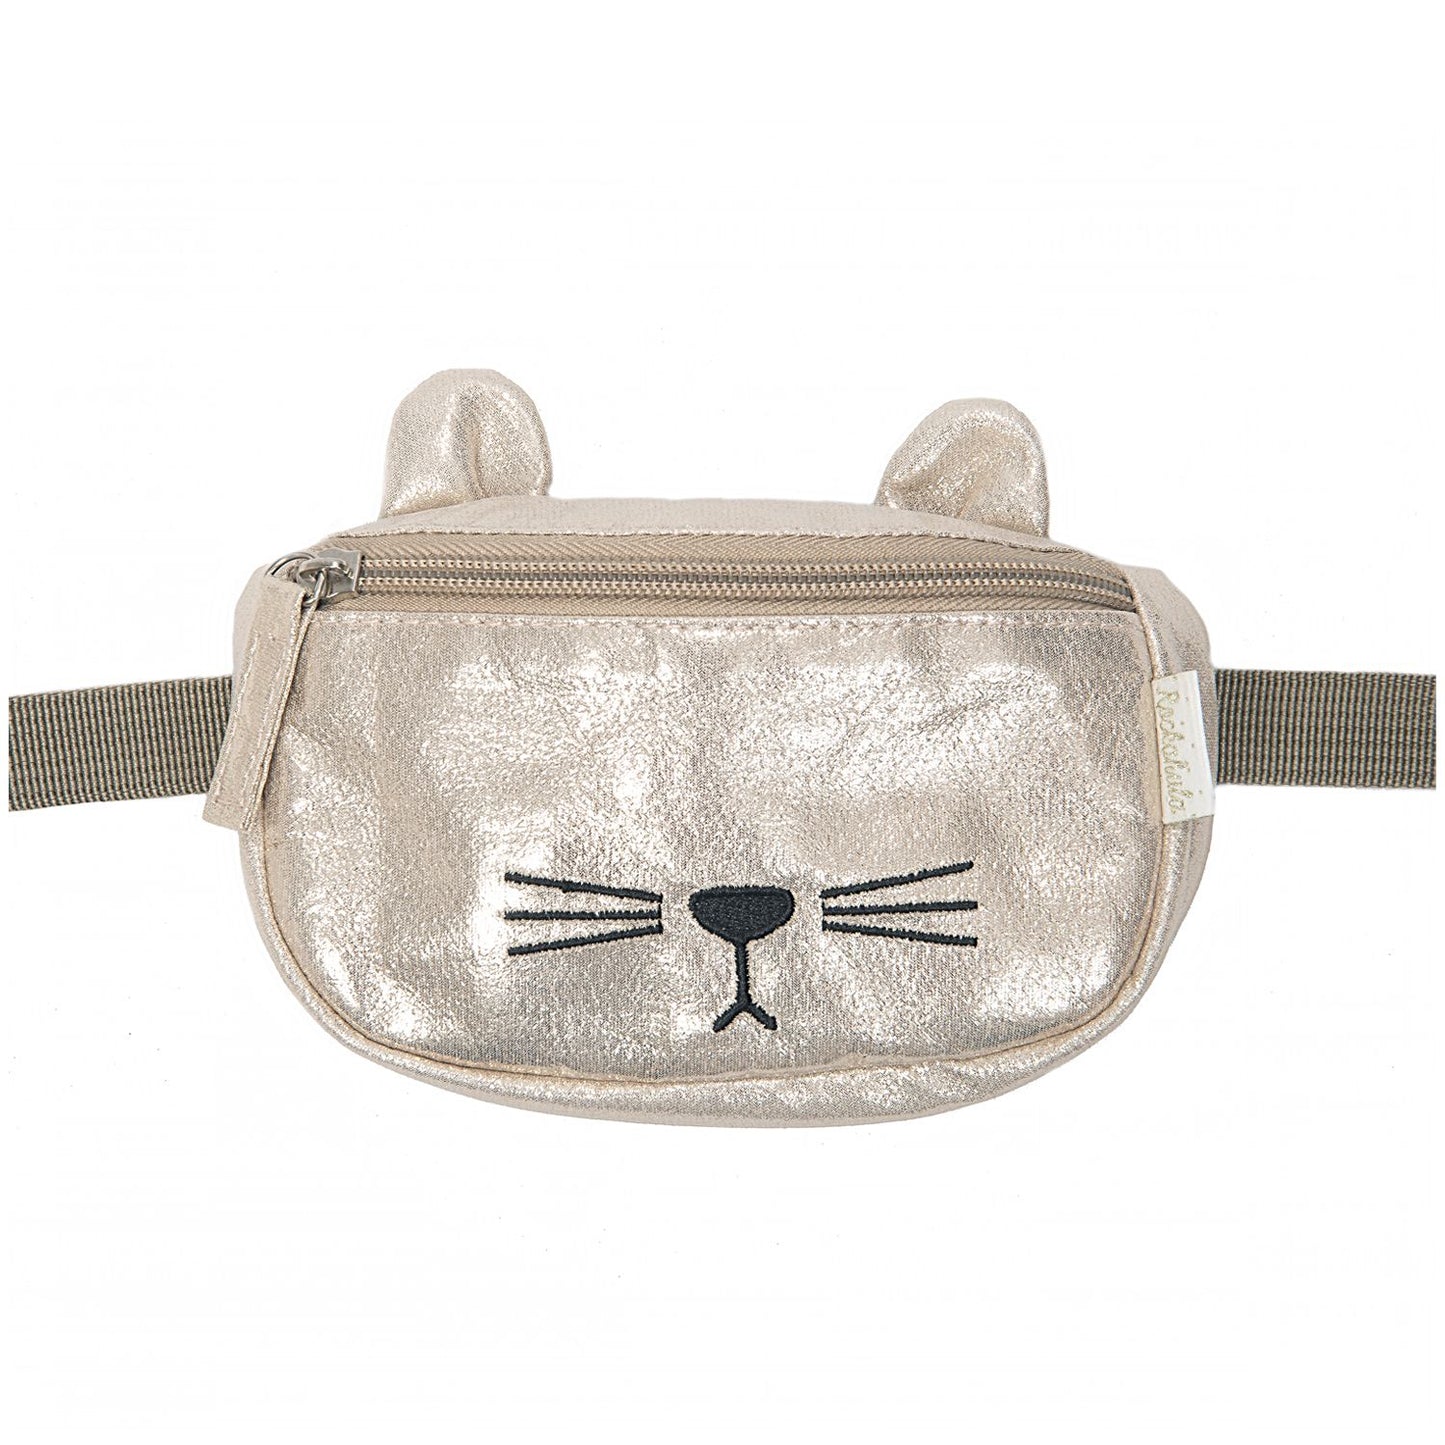 Cleo Cat Bum Bag